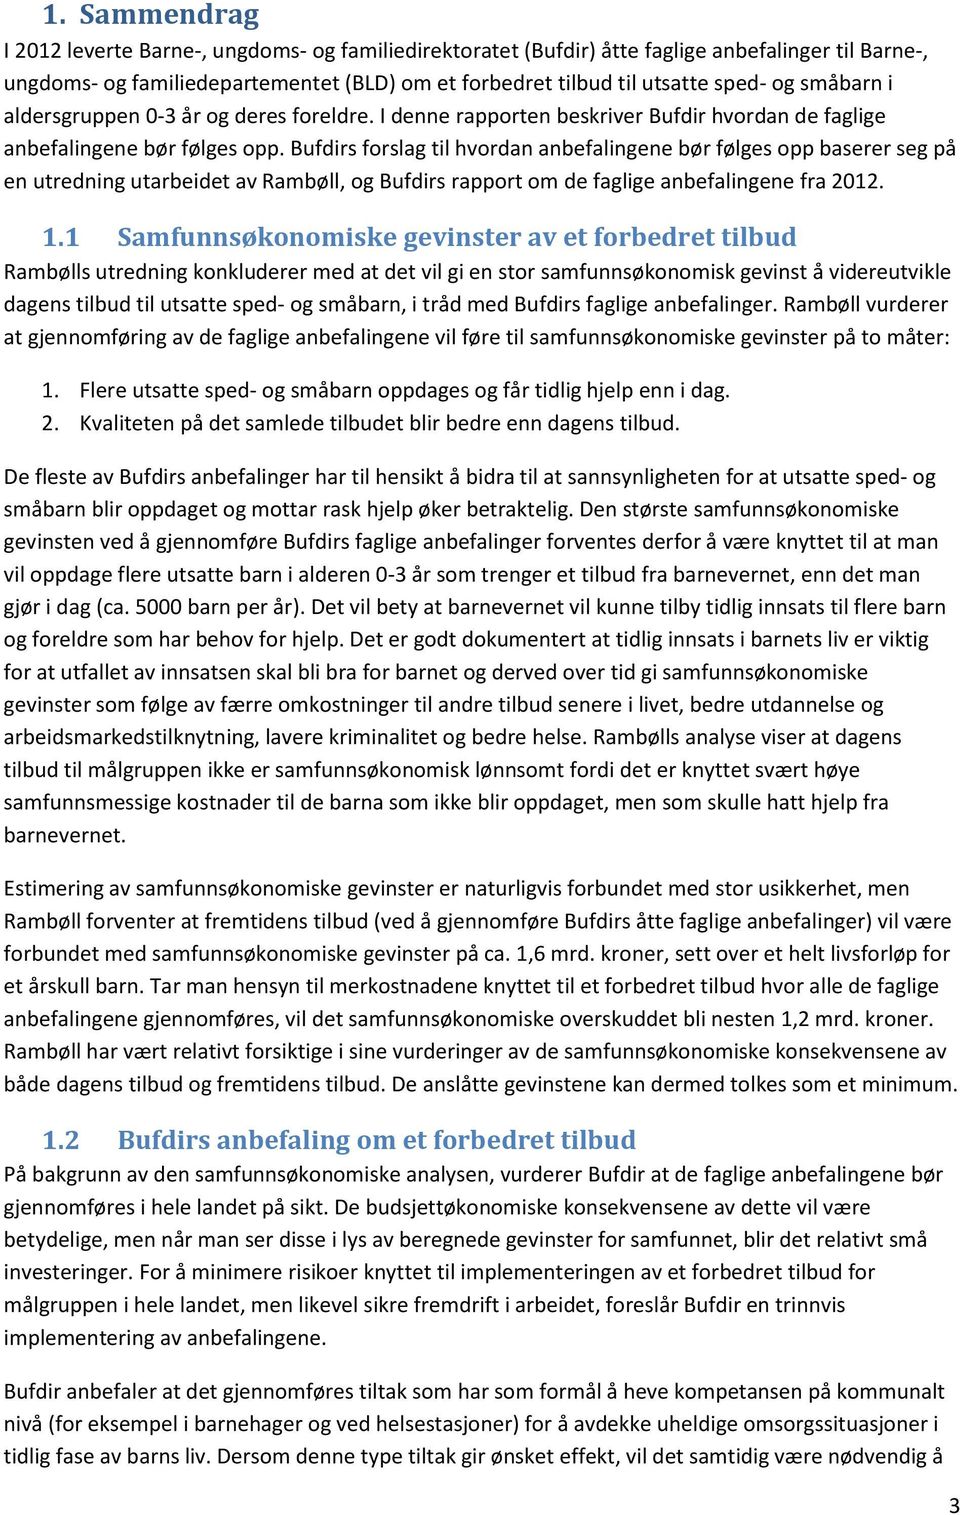 Bufdirs forslag til hvordan anbefalingene bør følges opp baserer seg på en utredning utarbeidet av Rambøll, og Bufdirs rapport om de faglige anbefalingene fra 2012. 1.